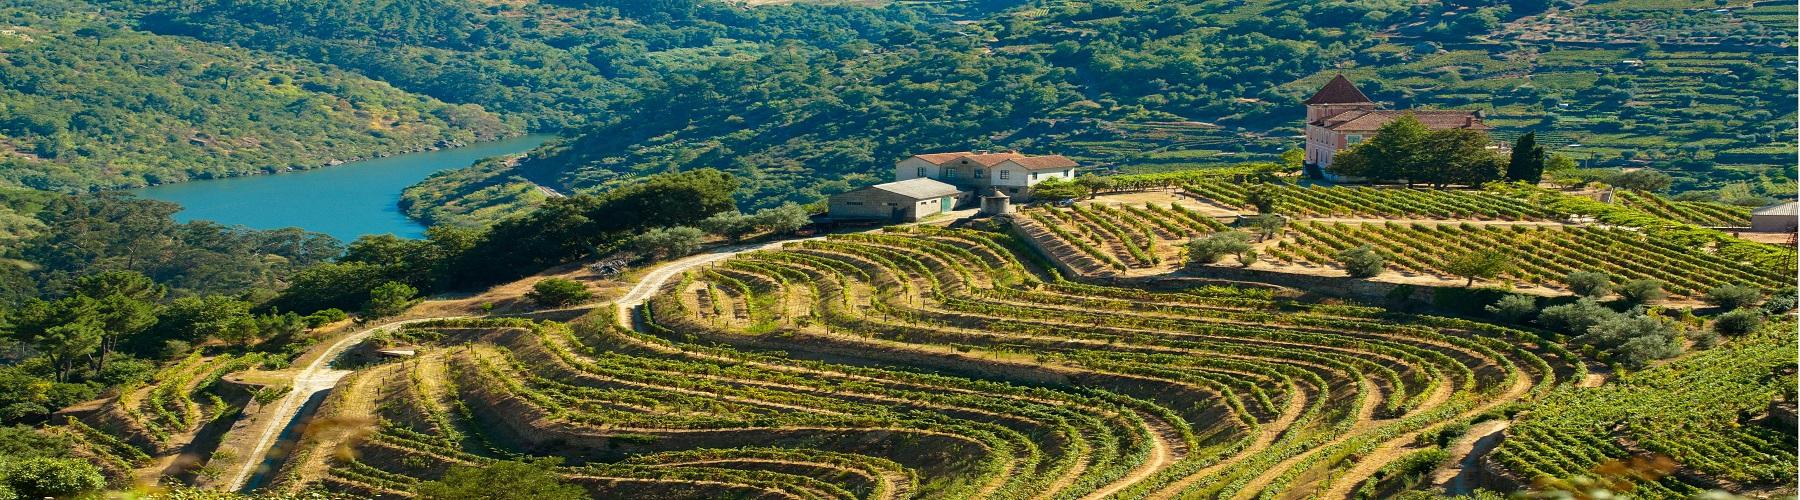 В Португалии лучшие места для путешественников